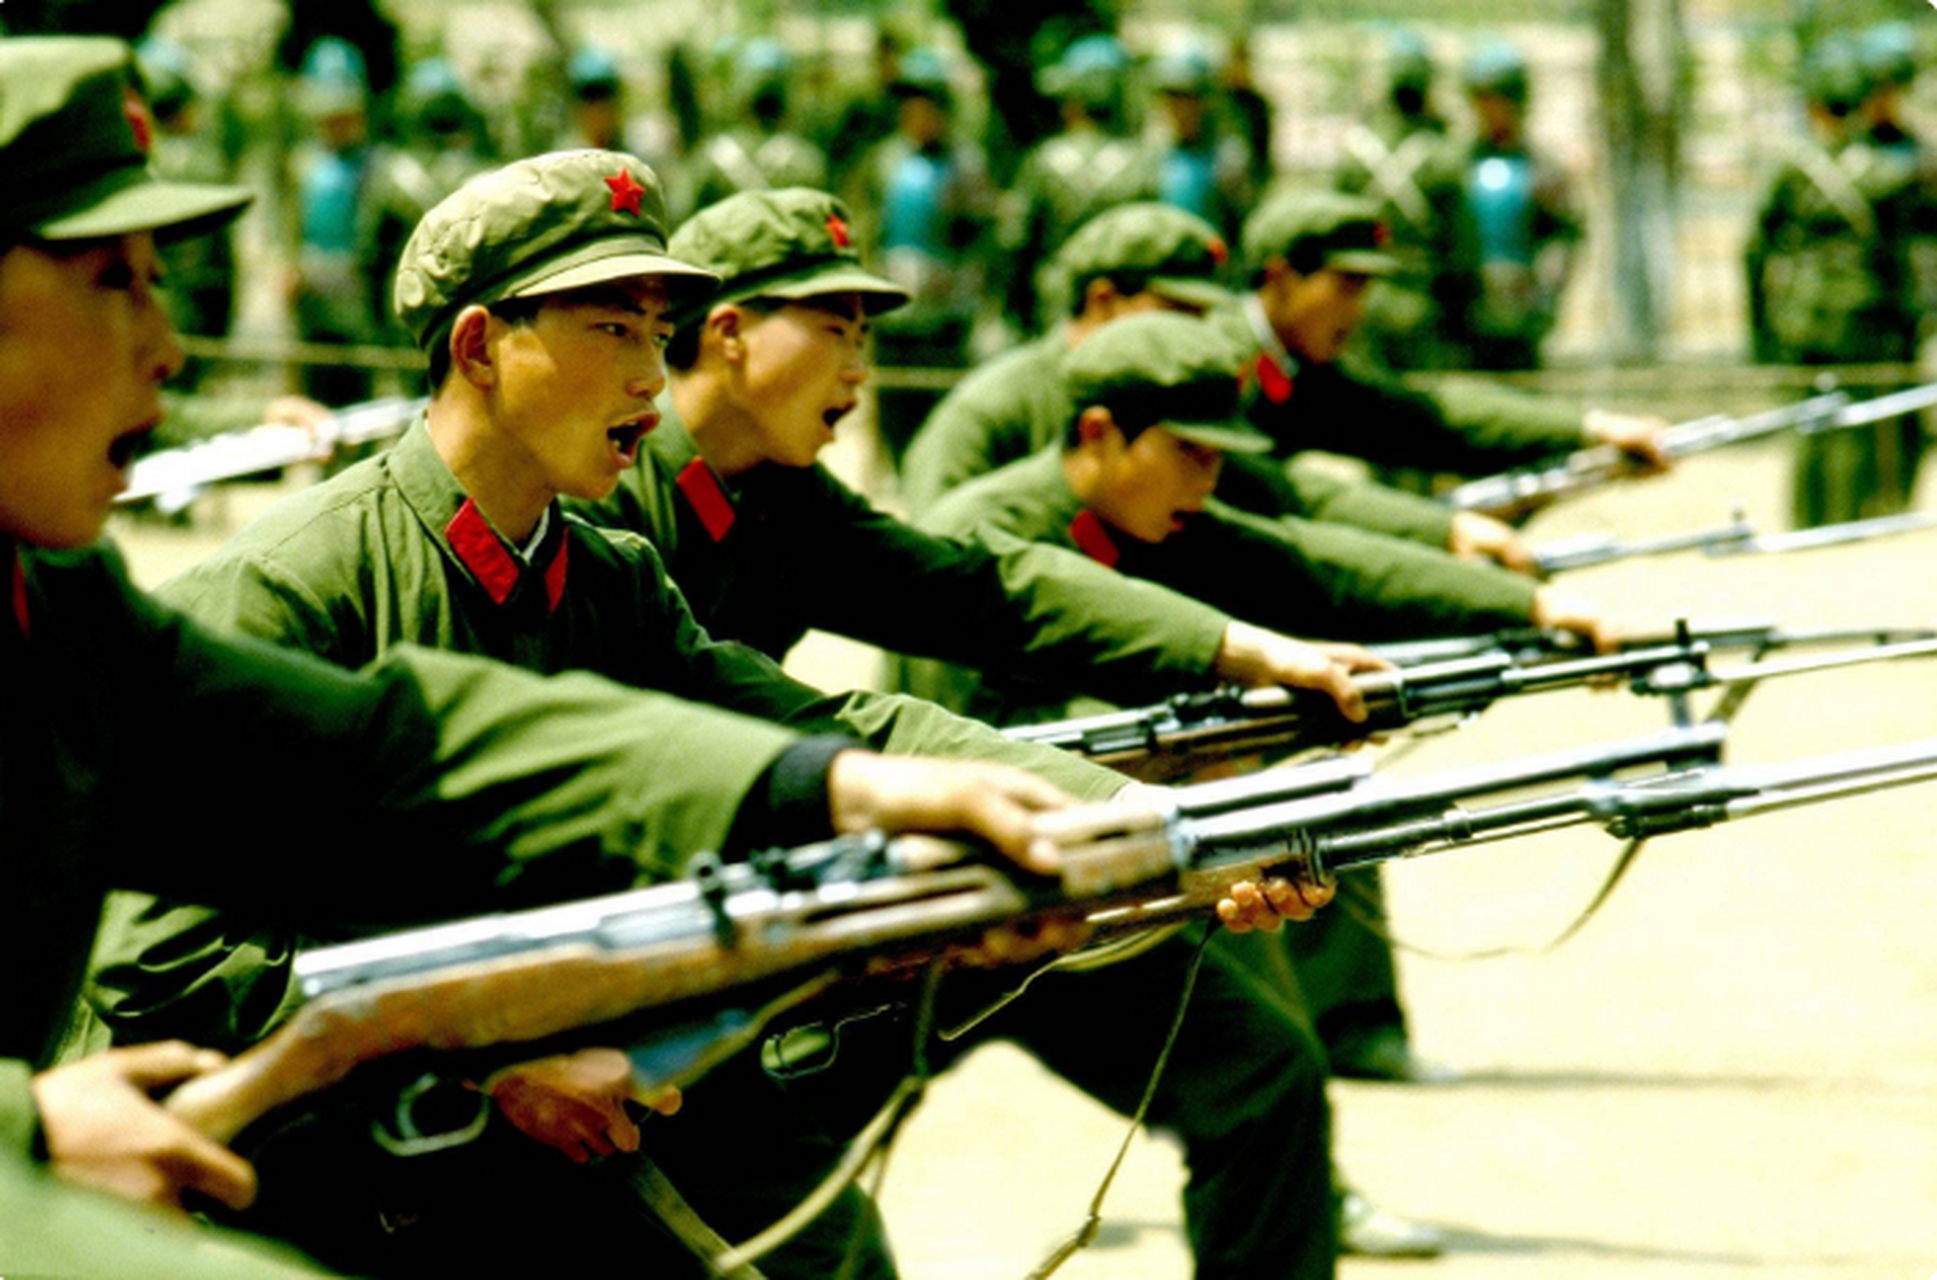 70年代军人照片解放军图片